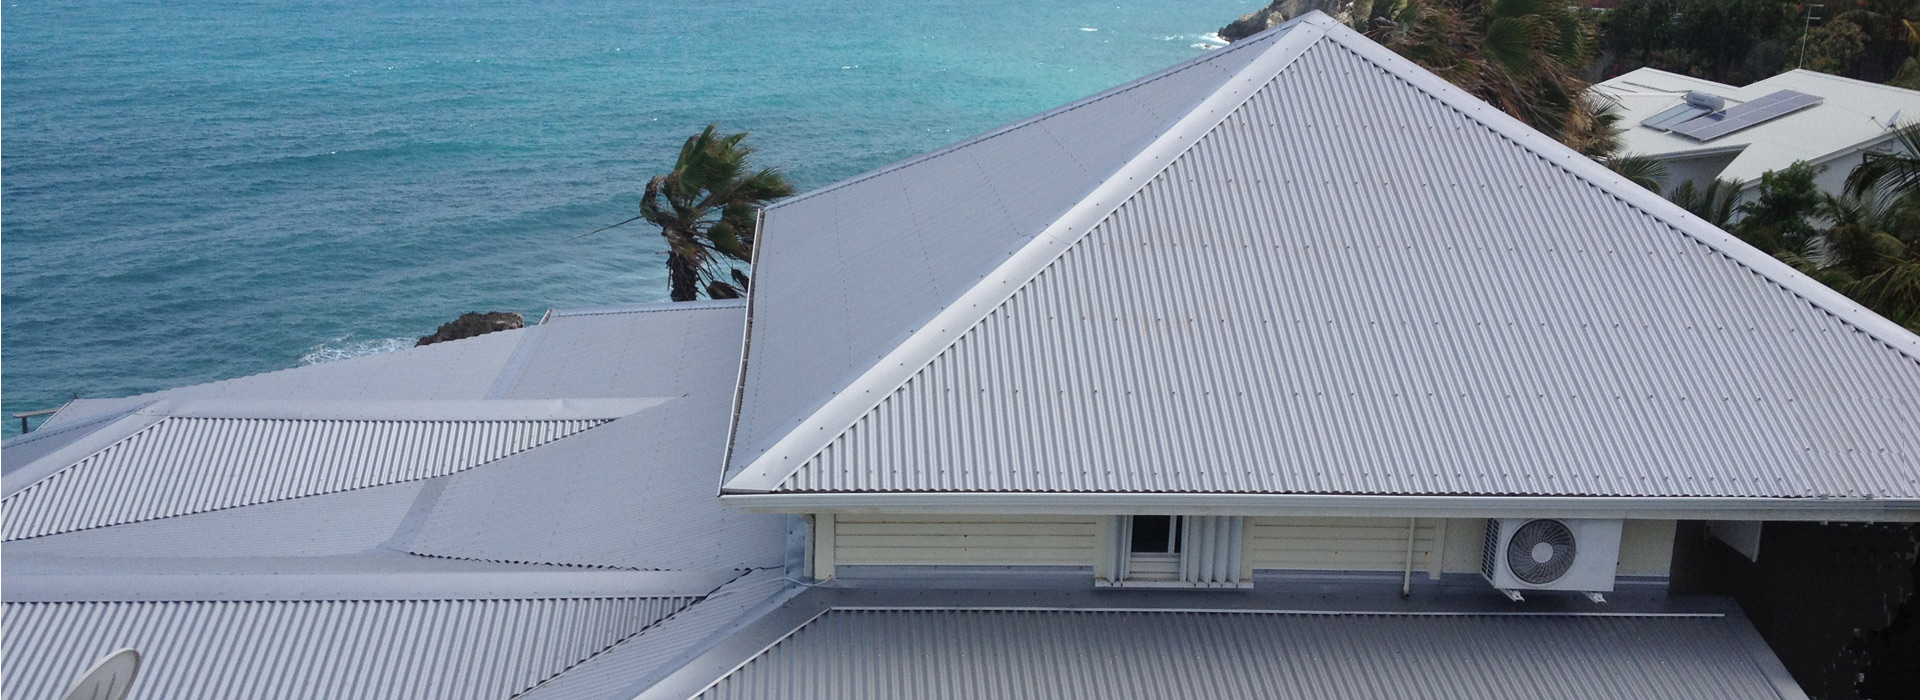 Tôle ondulée colorée - Toiture maison créole - TPG - Guadeloupe - Antilles